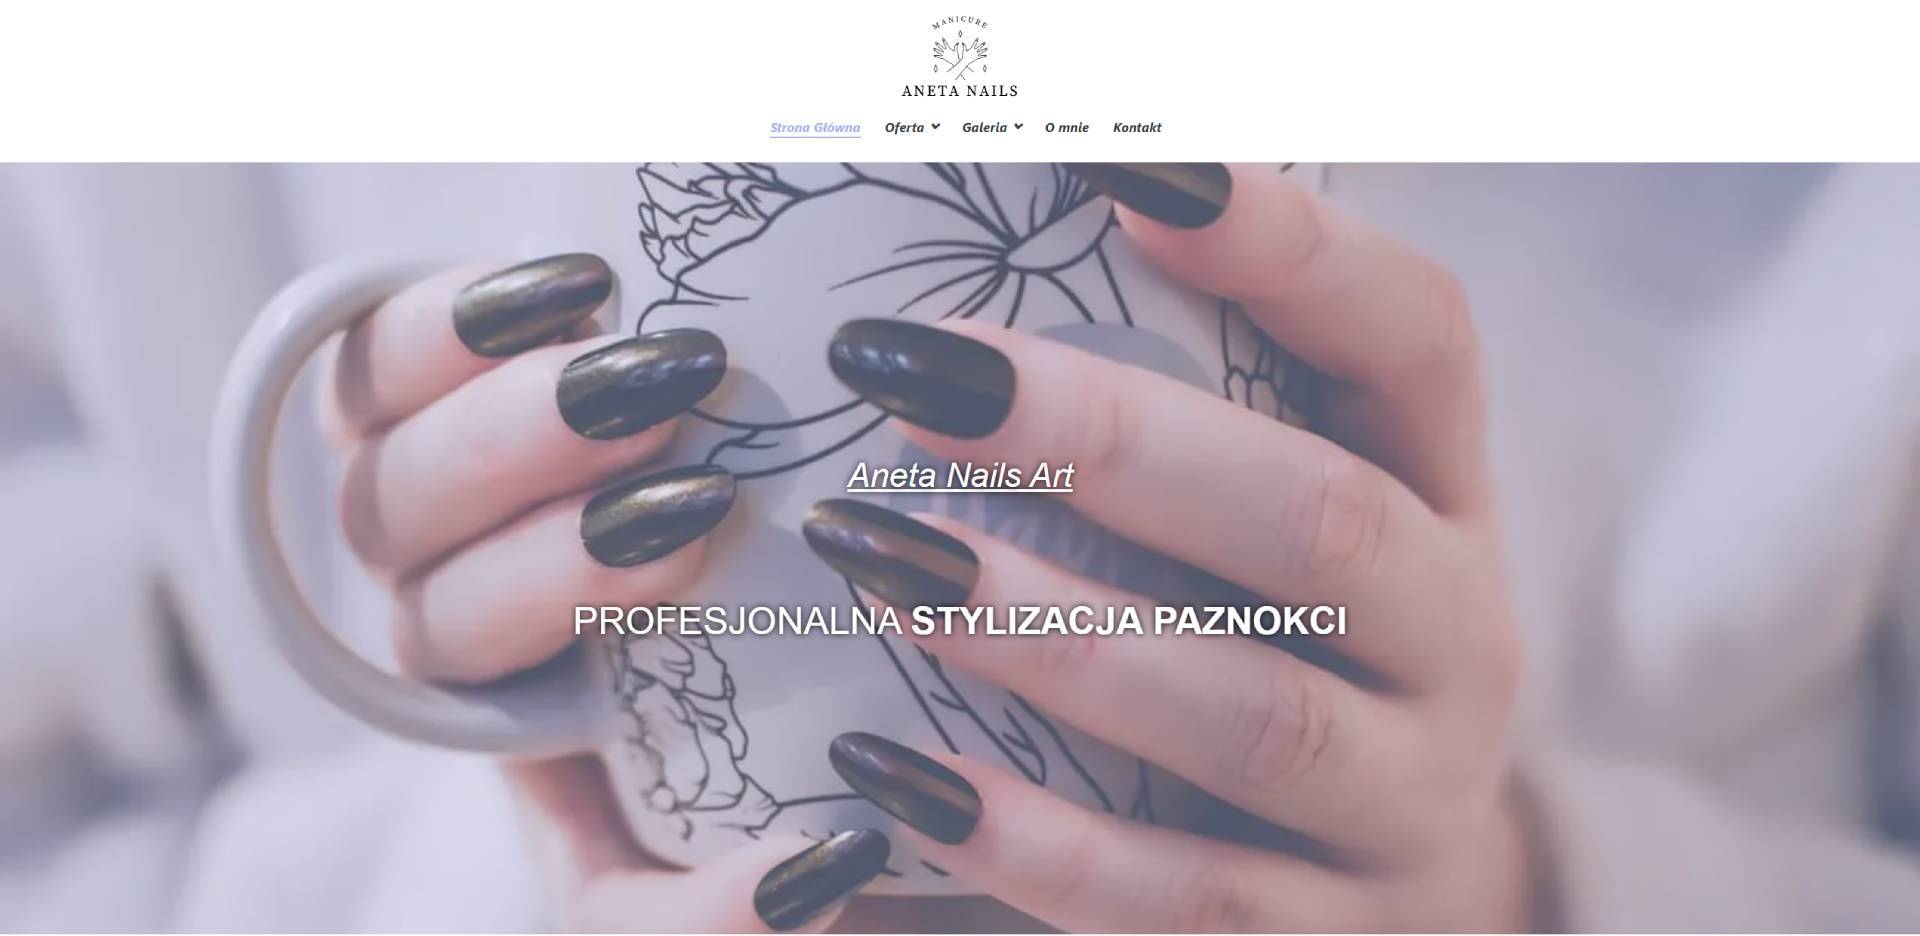 Projekt Aneta Nails - Studio stylizacji paznokci - anetanails.pl - Portfolio